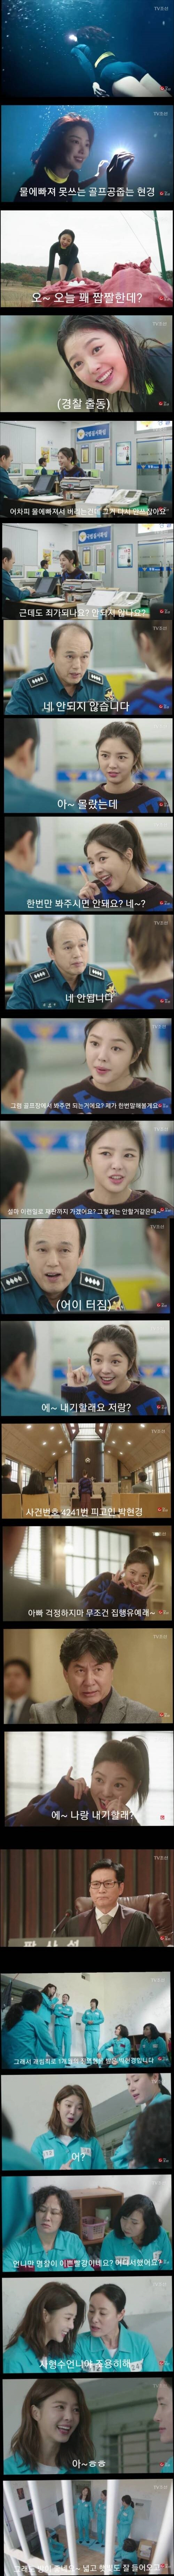 한국 드라마 레젼드급 죄수 케릭터